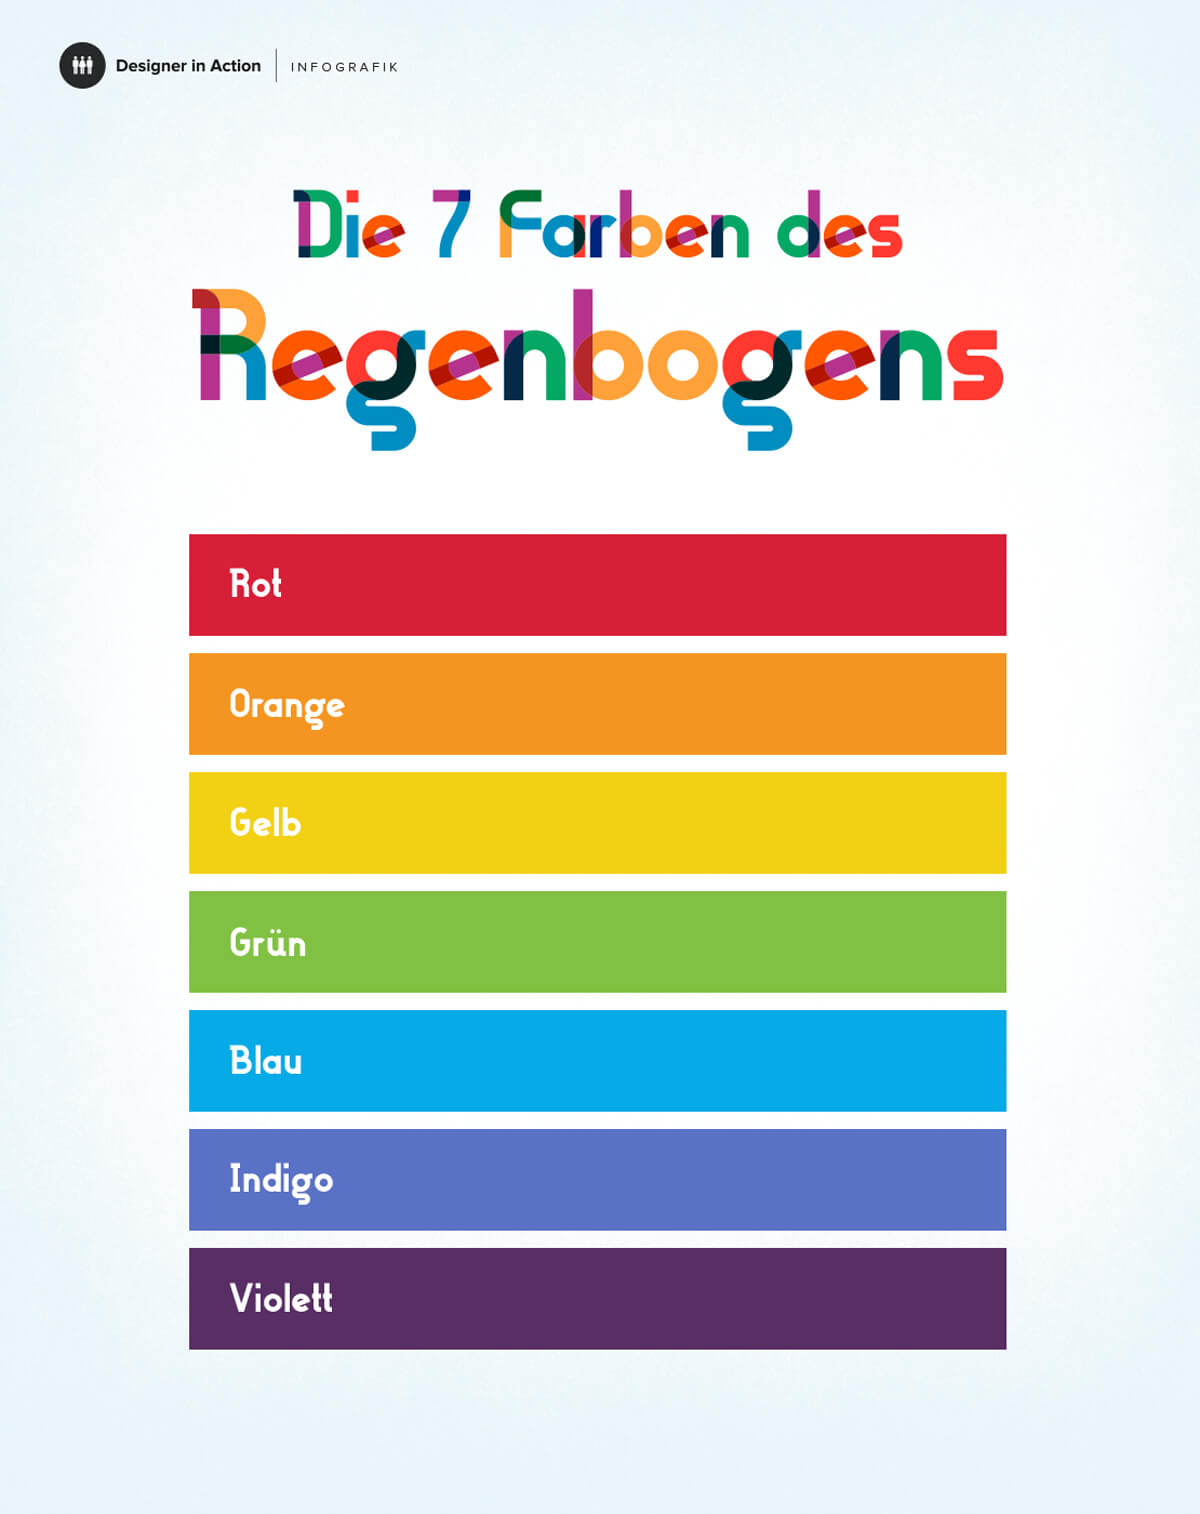 Die 7 Farben des Regenbogens als Infografik